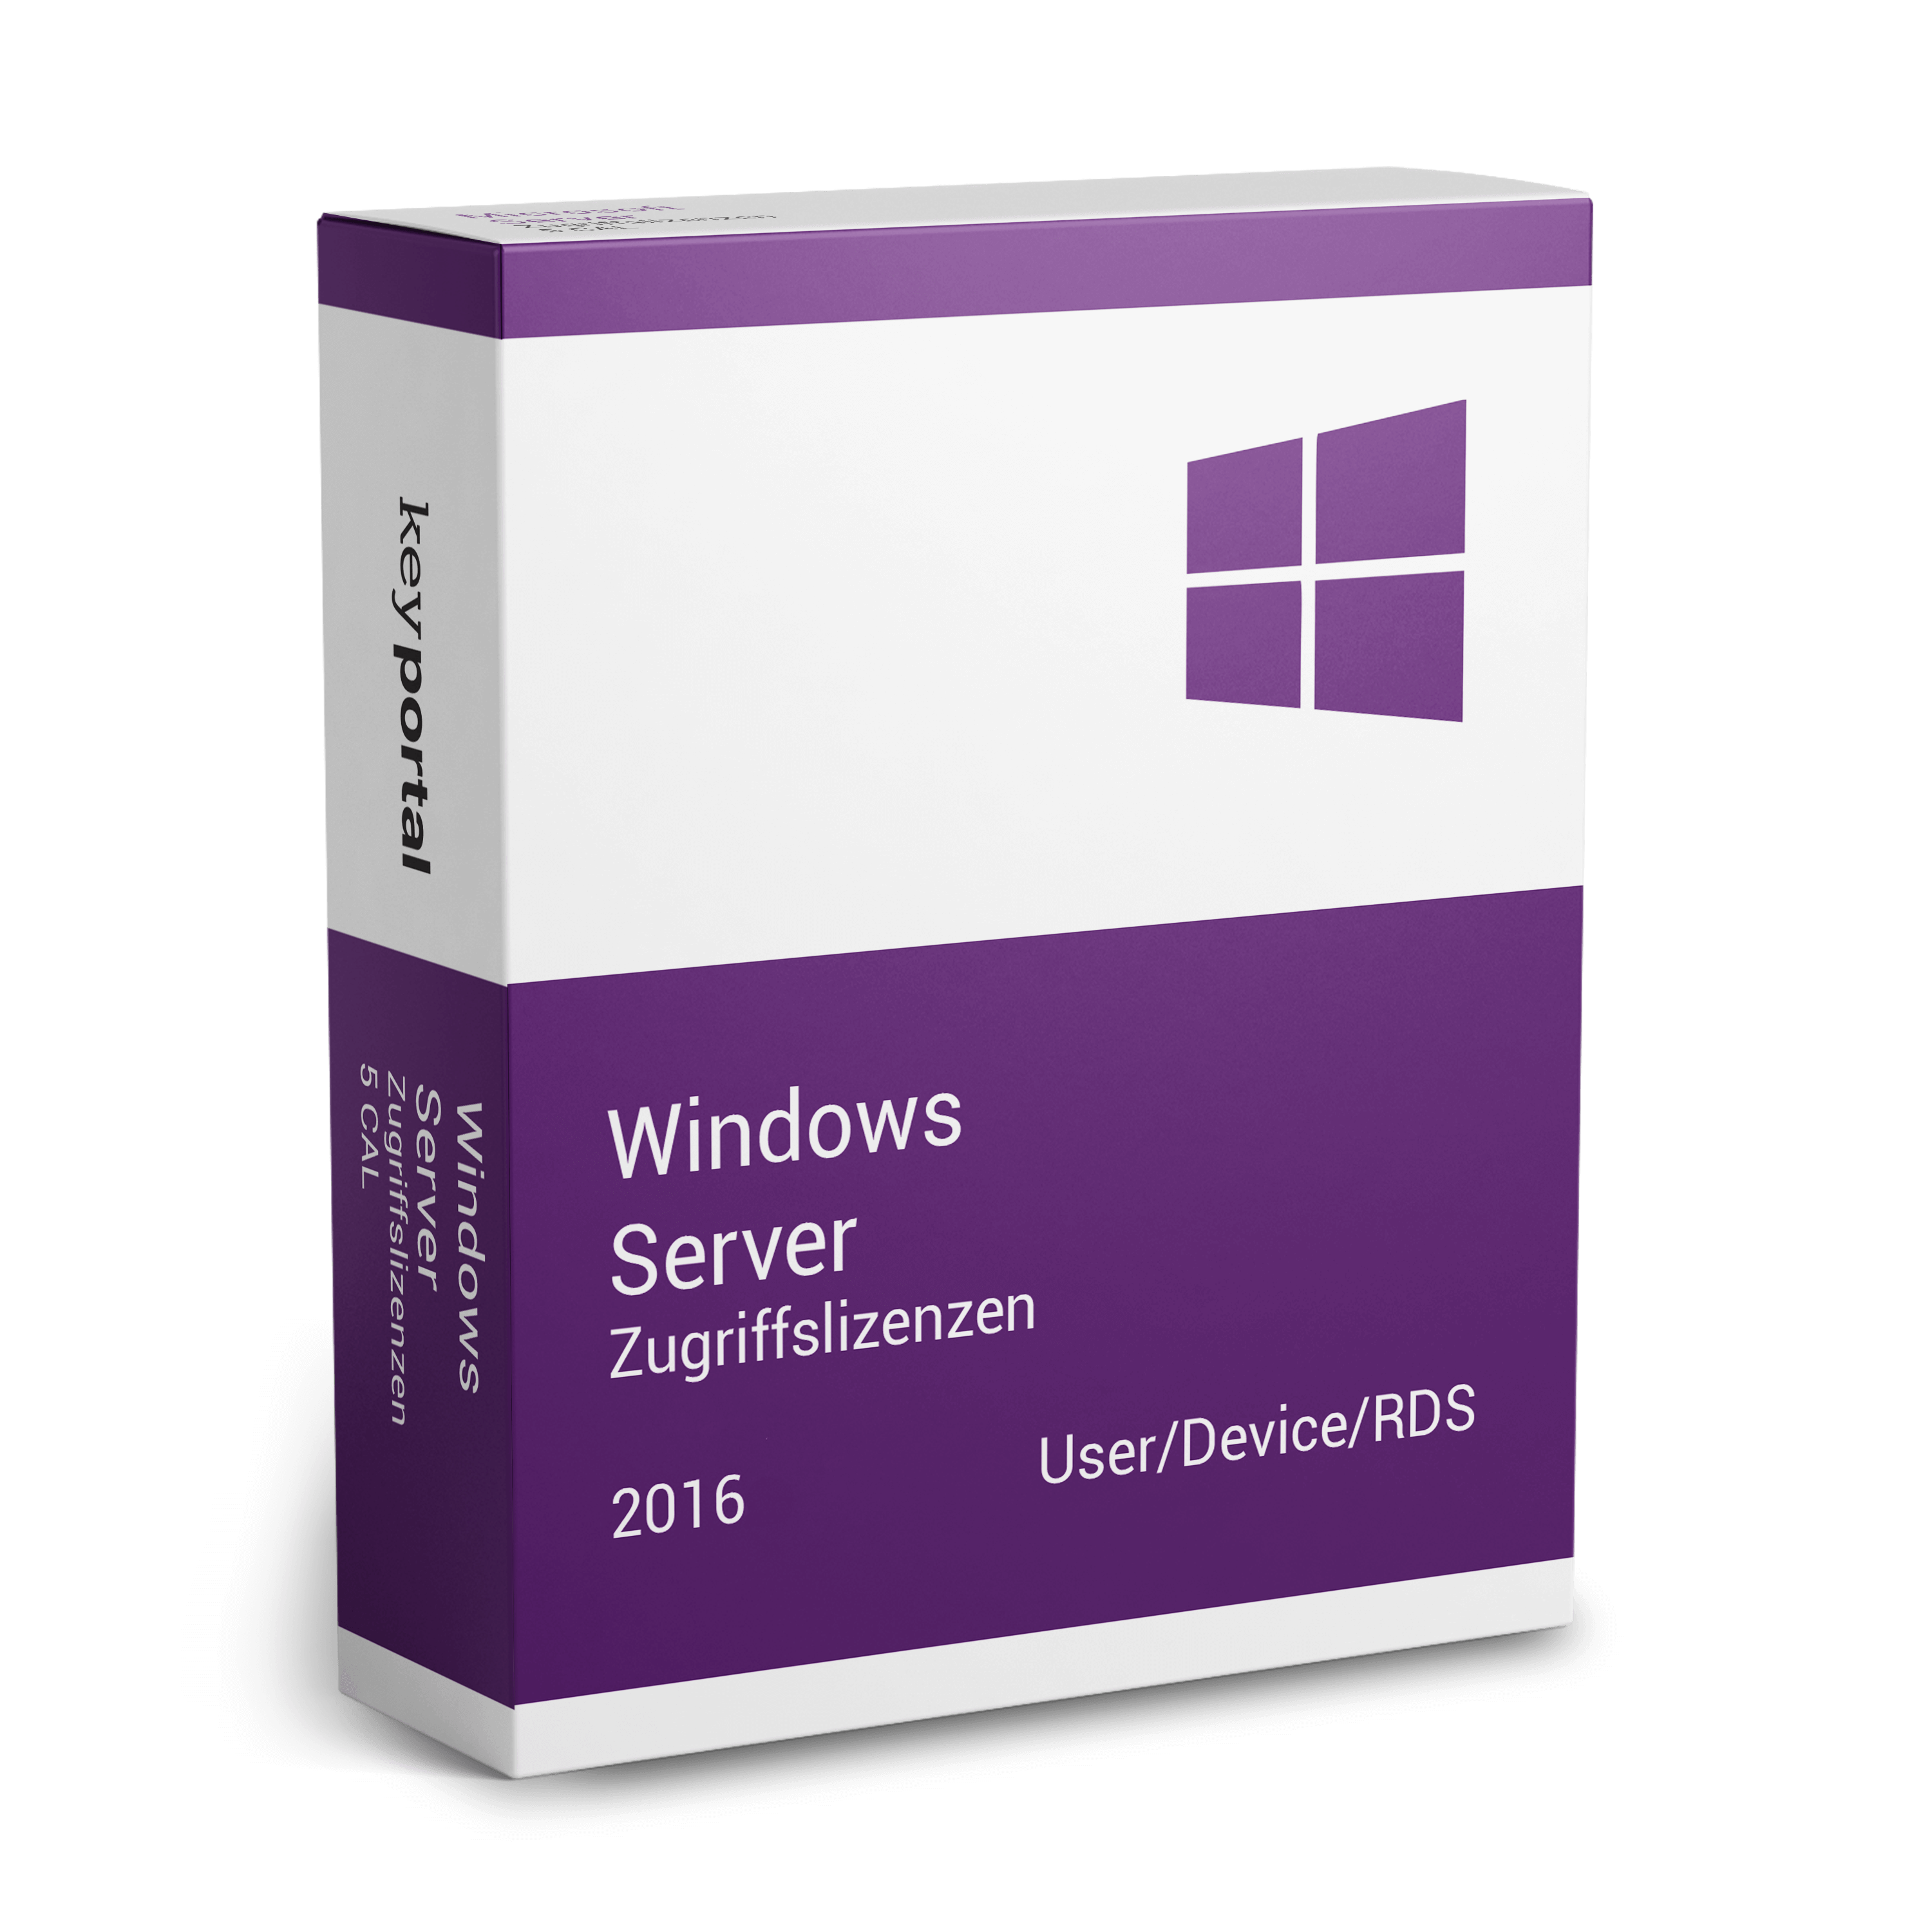 Windows Server 2016 Zugriffslizenzen (CALs)